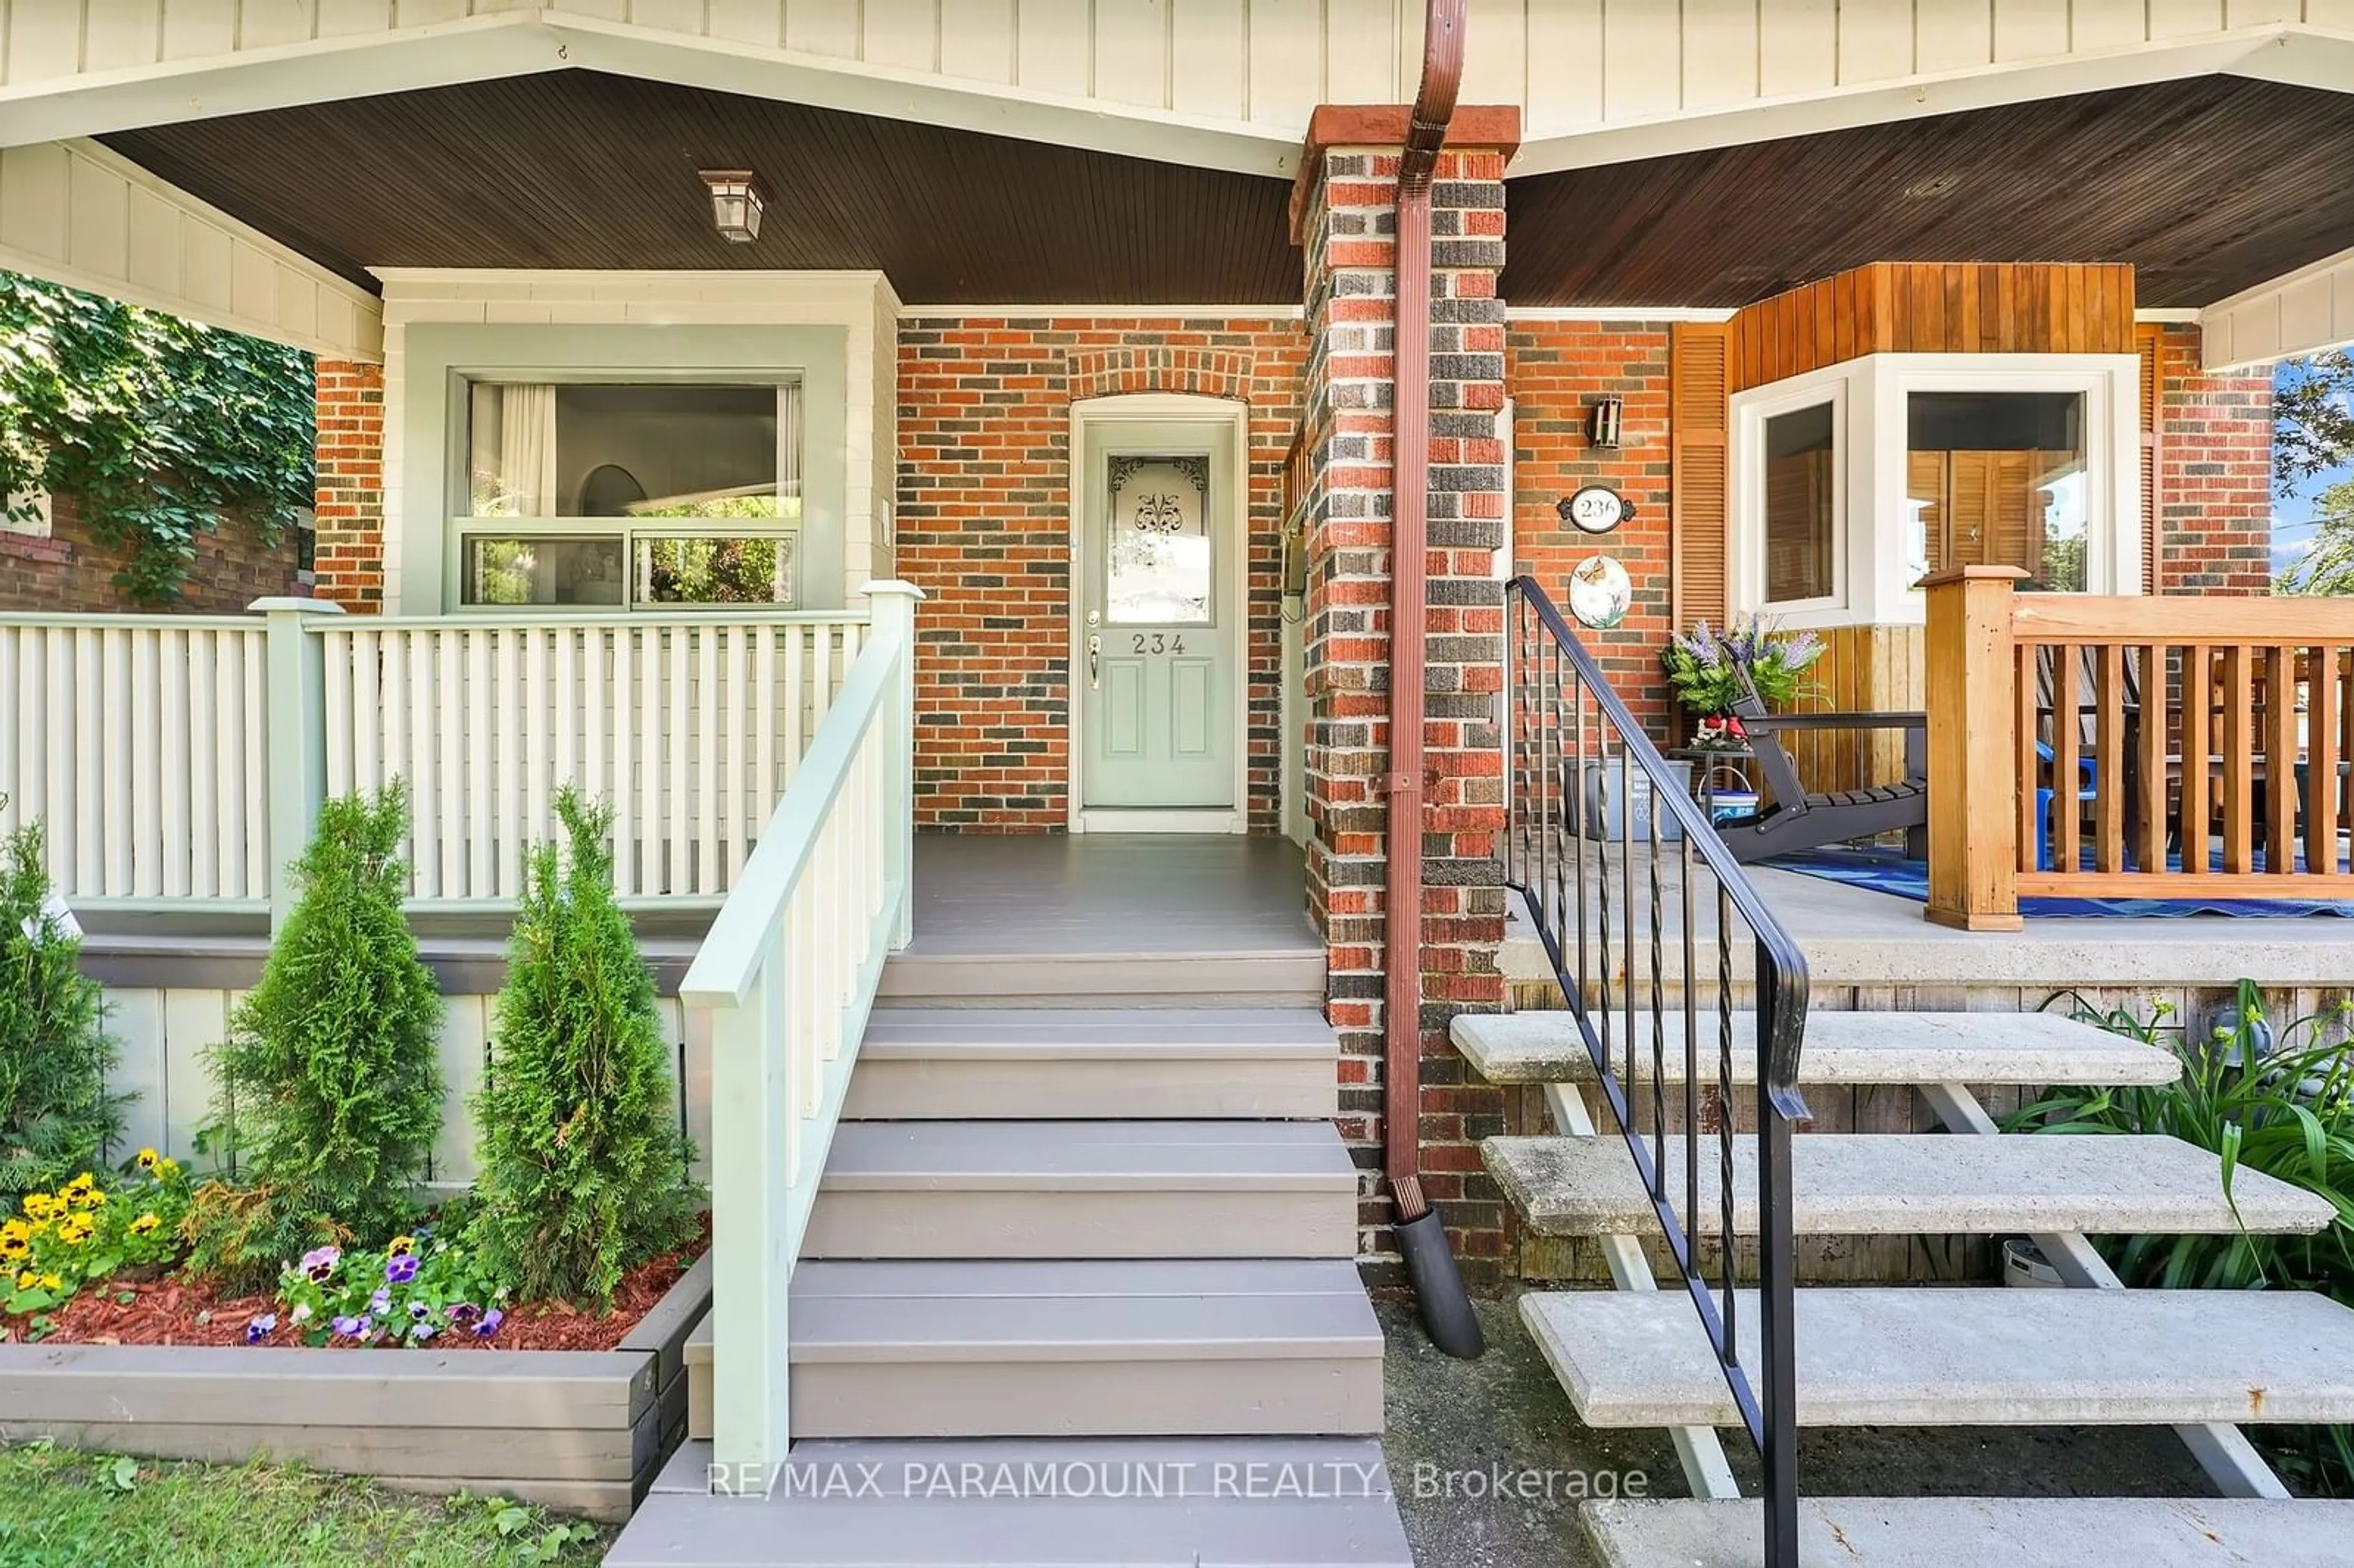 Home with brick exterior material for 234 Bingham Ave, Toronto Ontario M4E 3R5